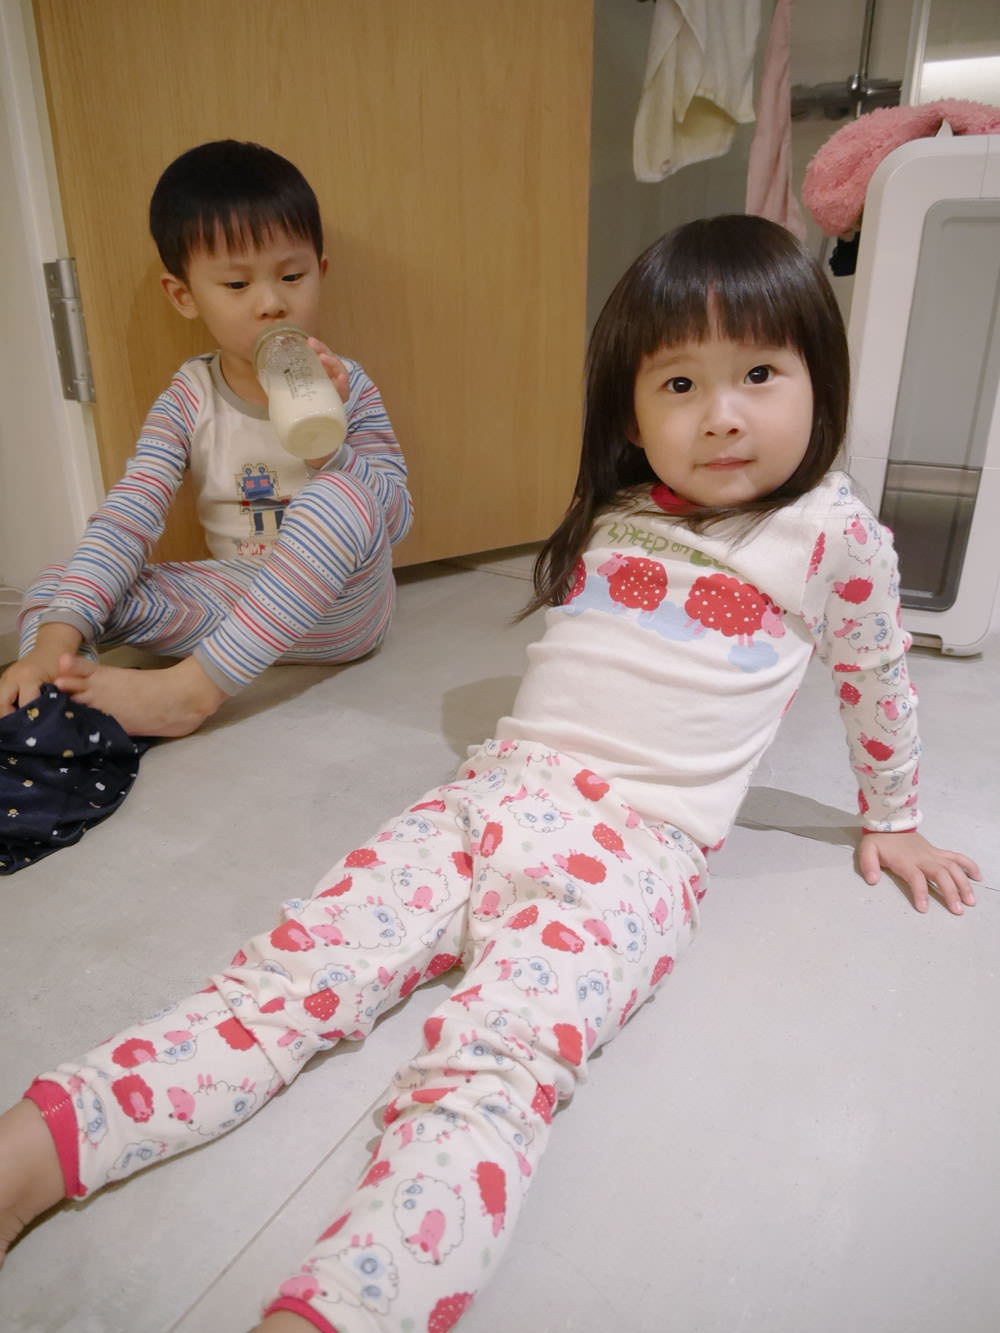 [啾團] 好睡好舒服,穿一次就愛上的無毒兒童韓國withorganic有機棉家居服+Tom&Jane無螢光染棉家居服